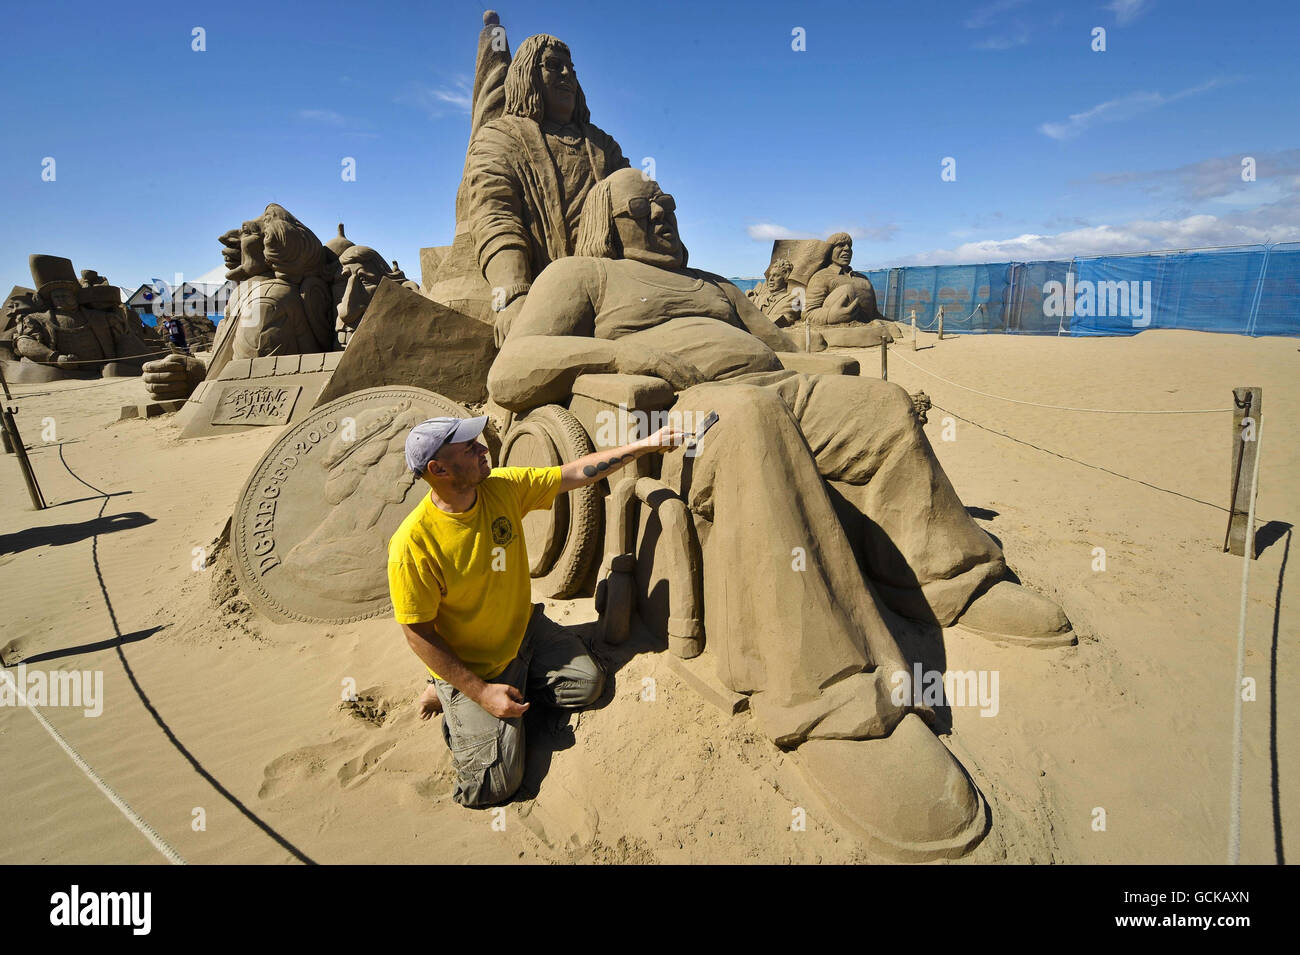 Sculpture sur sable et artiste Baldrick Buckle, 38 ans, originaire de Leeds mais maintenant vit aux pays-Bas, travaille sur sa sculpture des personnages de Little Britain Lou et Andy dans le Weston-super-Mare Sand Sculpture Festival sur la plage, qui cette année a le thème et la célébration de toutes choses britanniques. Banque D'Images